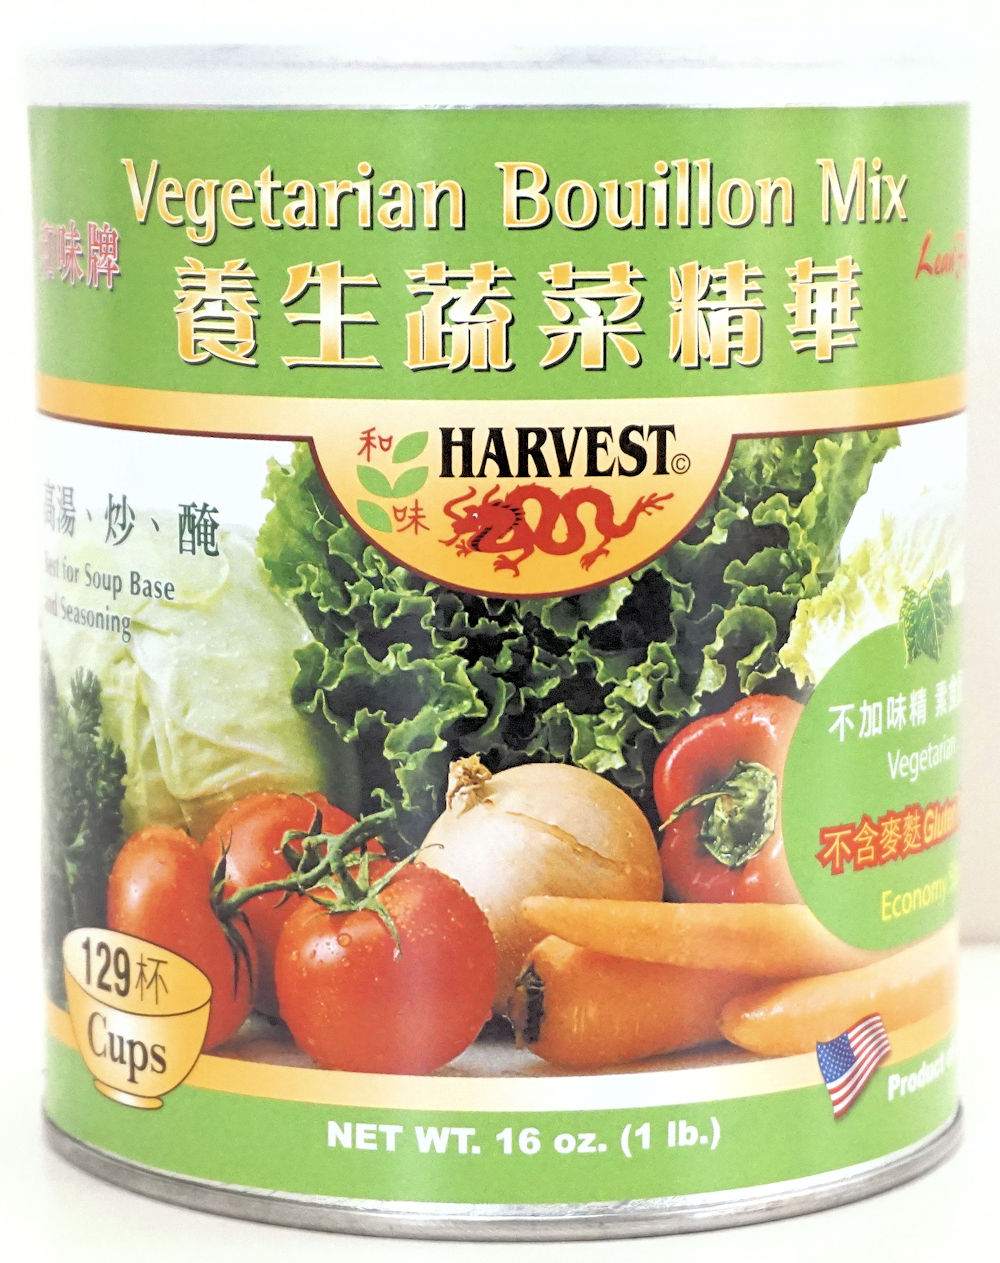 Harvest 2000 Vegetables  Bouillon Mix